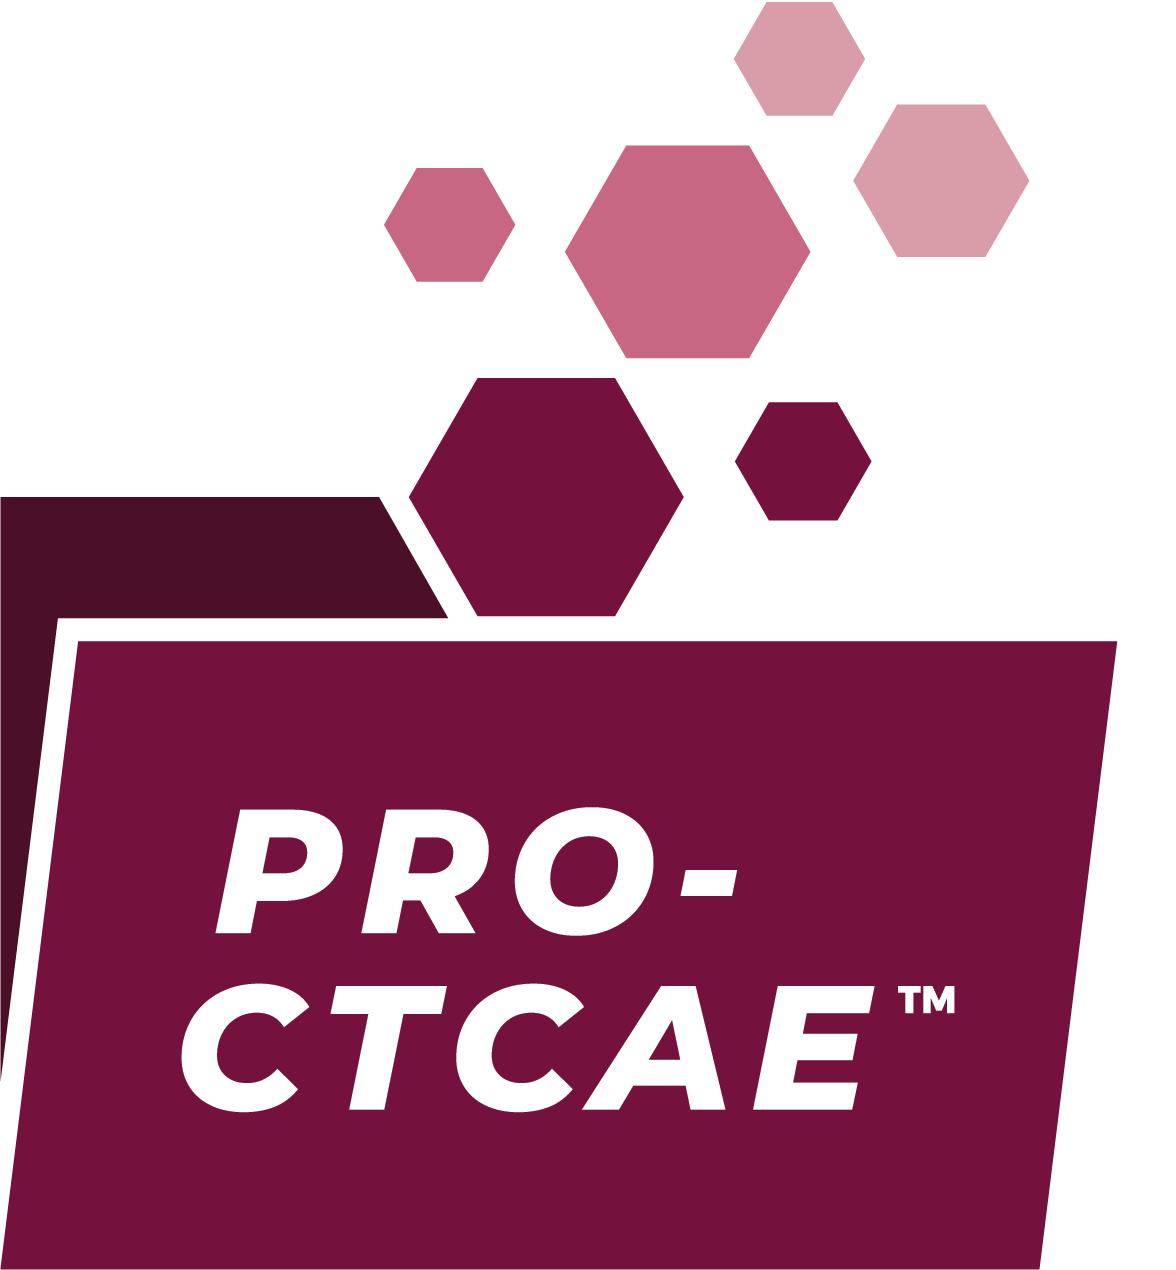 PRO-CTCAE logo